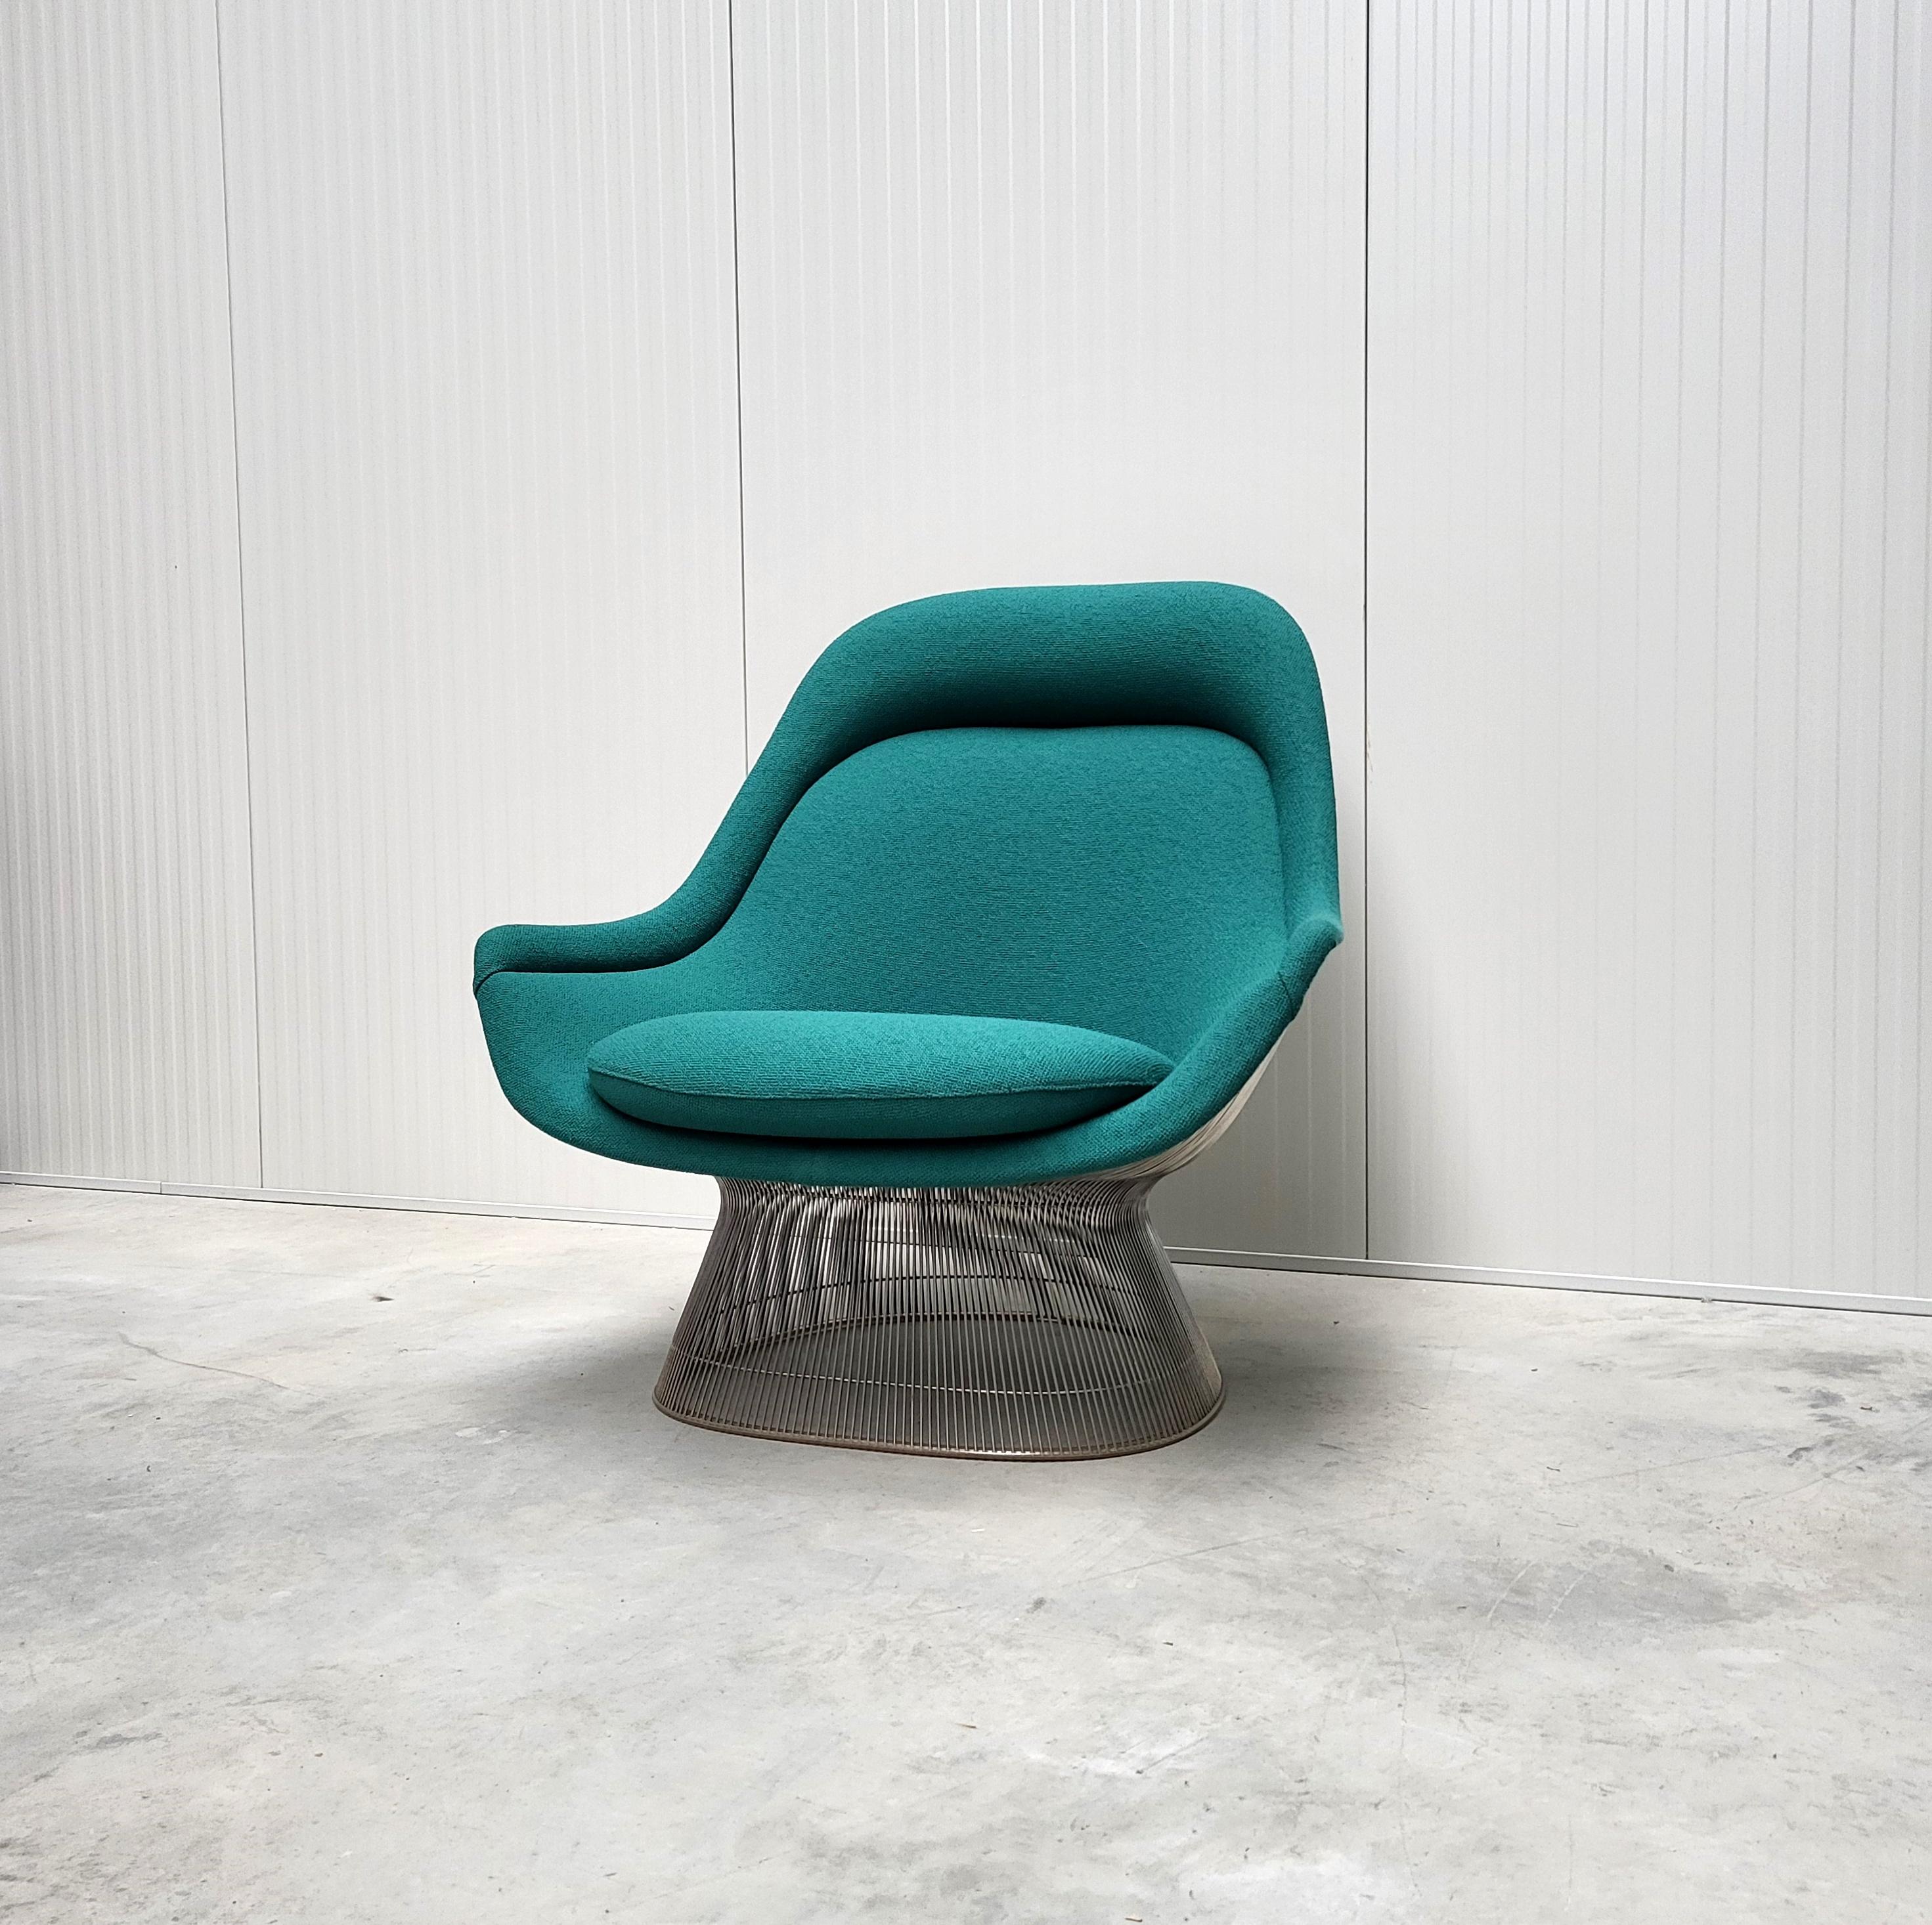 Fauteuil Easy Lounge de Warren Platner pour Knoll. 

La chaise révolutionnaire Easy a été conçue dans les années 1960 par Warren Platner et produite par Knoll au début des années 1980. Ce classique du milieu du siècle supporte d'innombrables